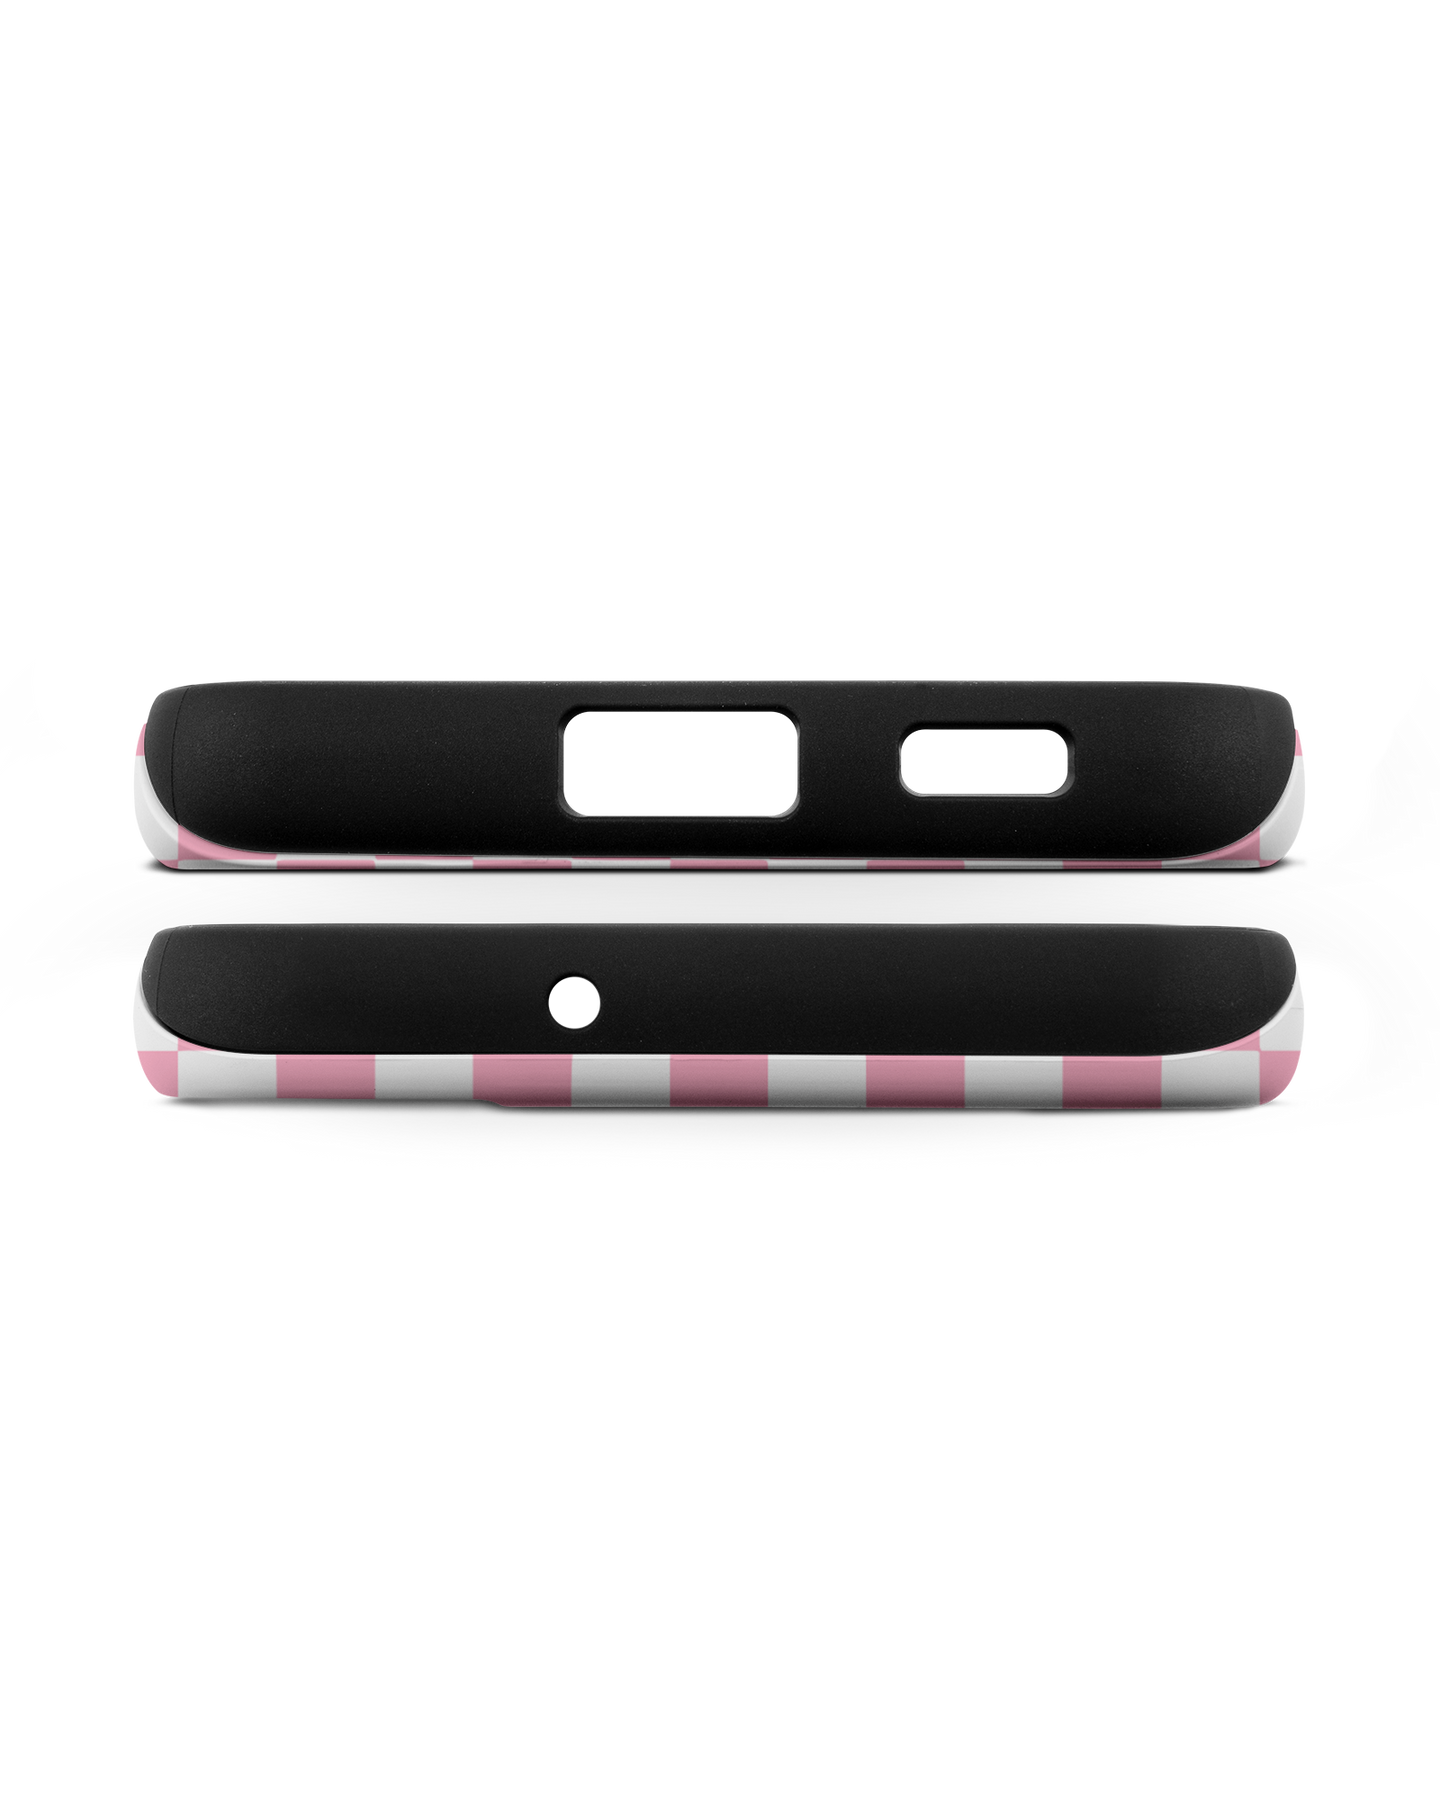 Pink Checkerboard Premium Phone Case Samsung Galaxy S22 Plus 5G